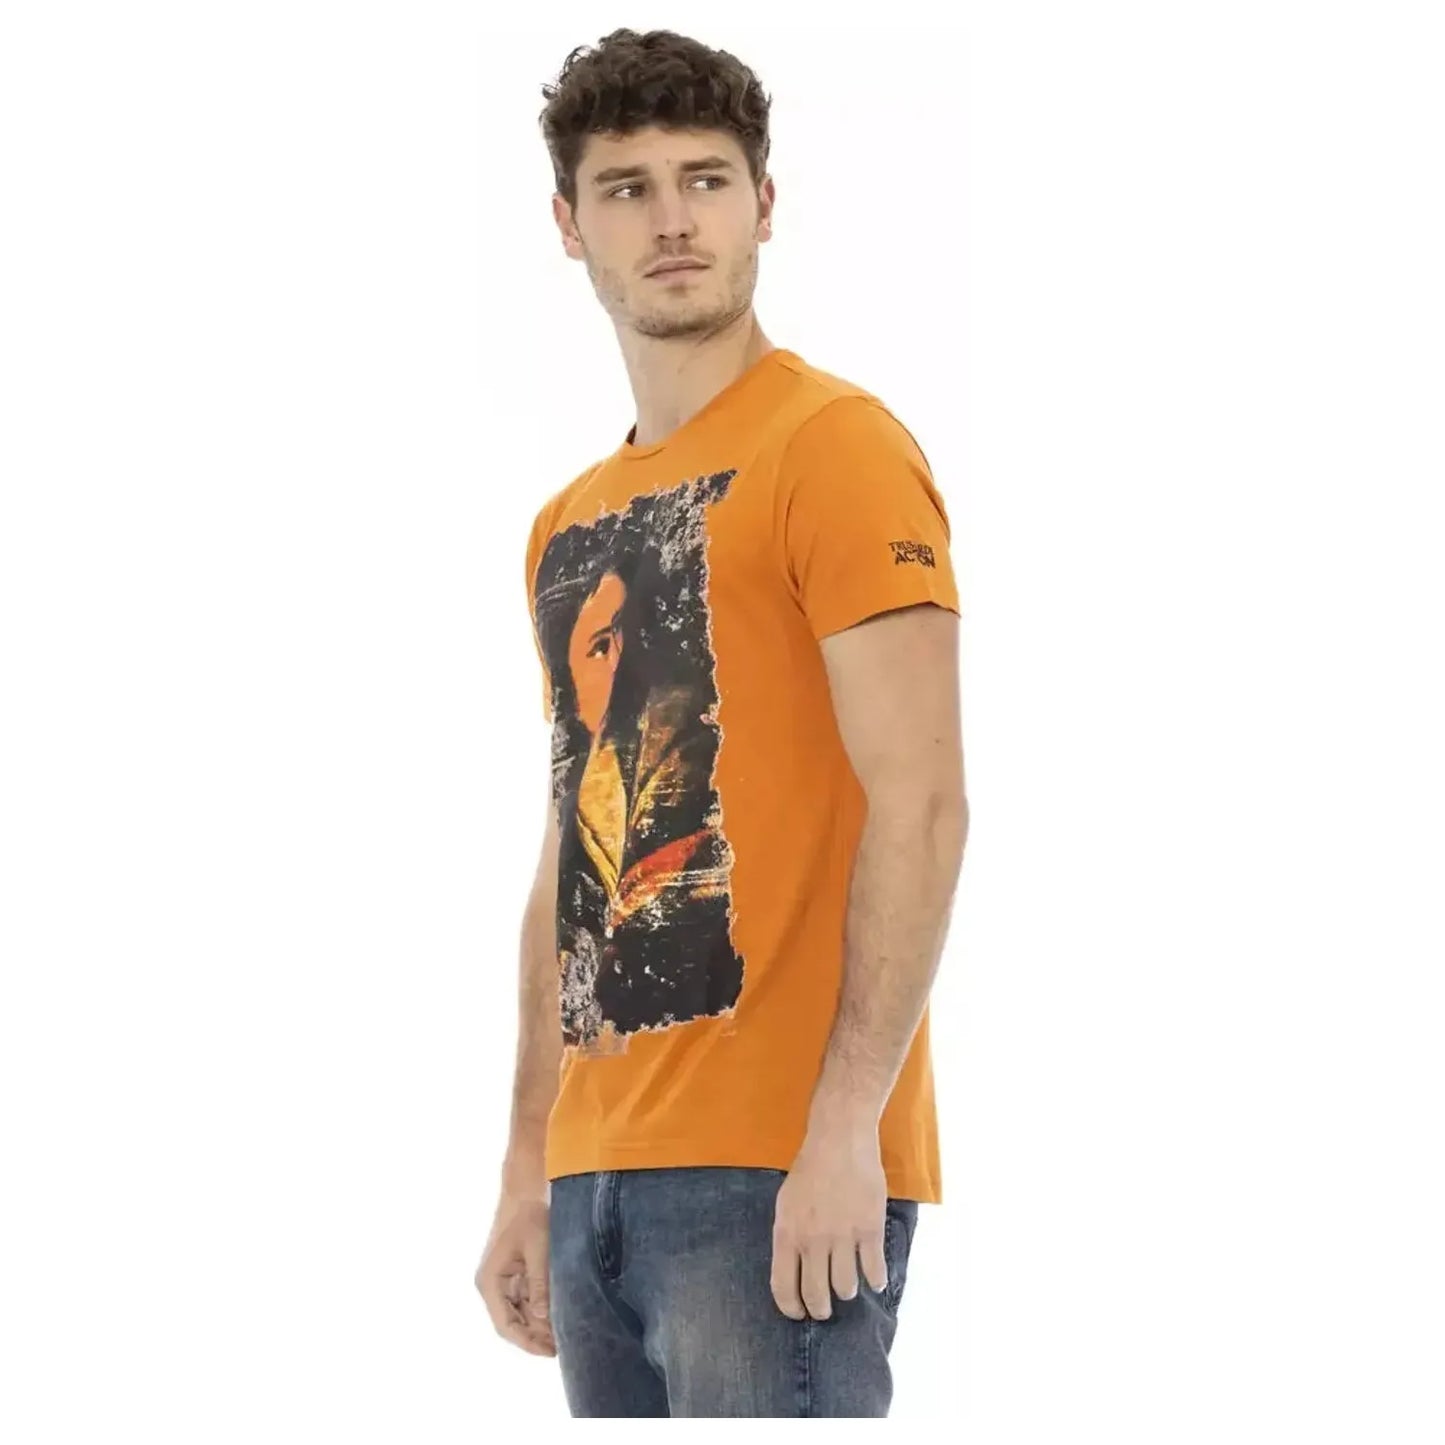 Trussardi Action Chic Orange Short Sleeve Round Neck Tee orange-cotton-t-shirt-26